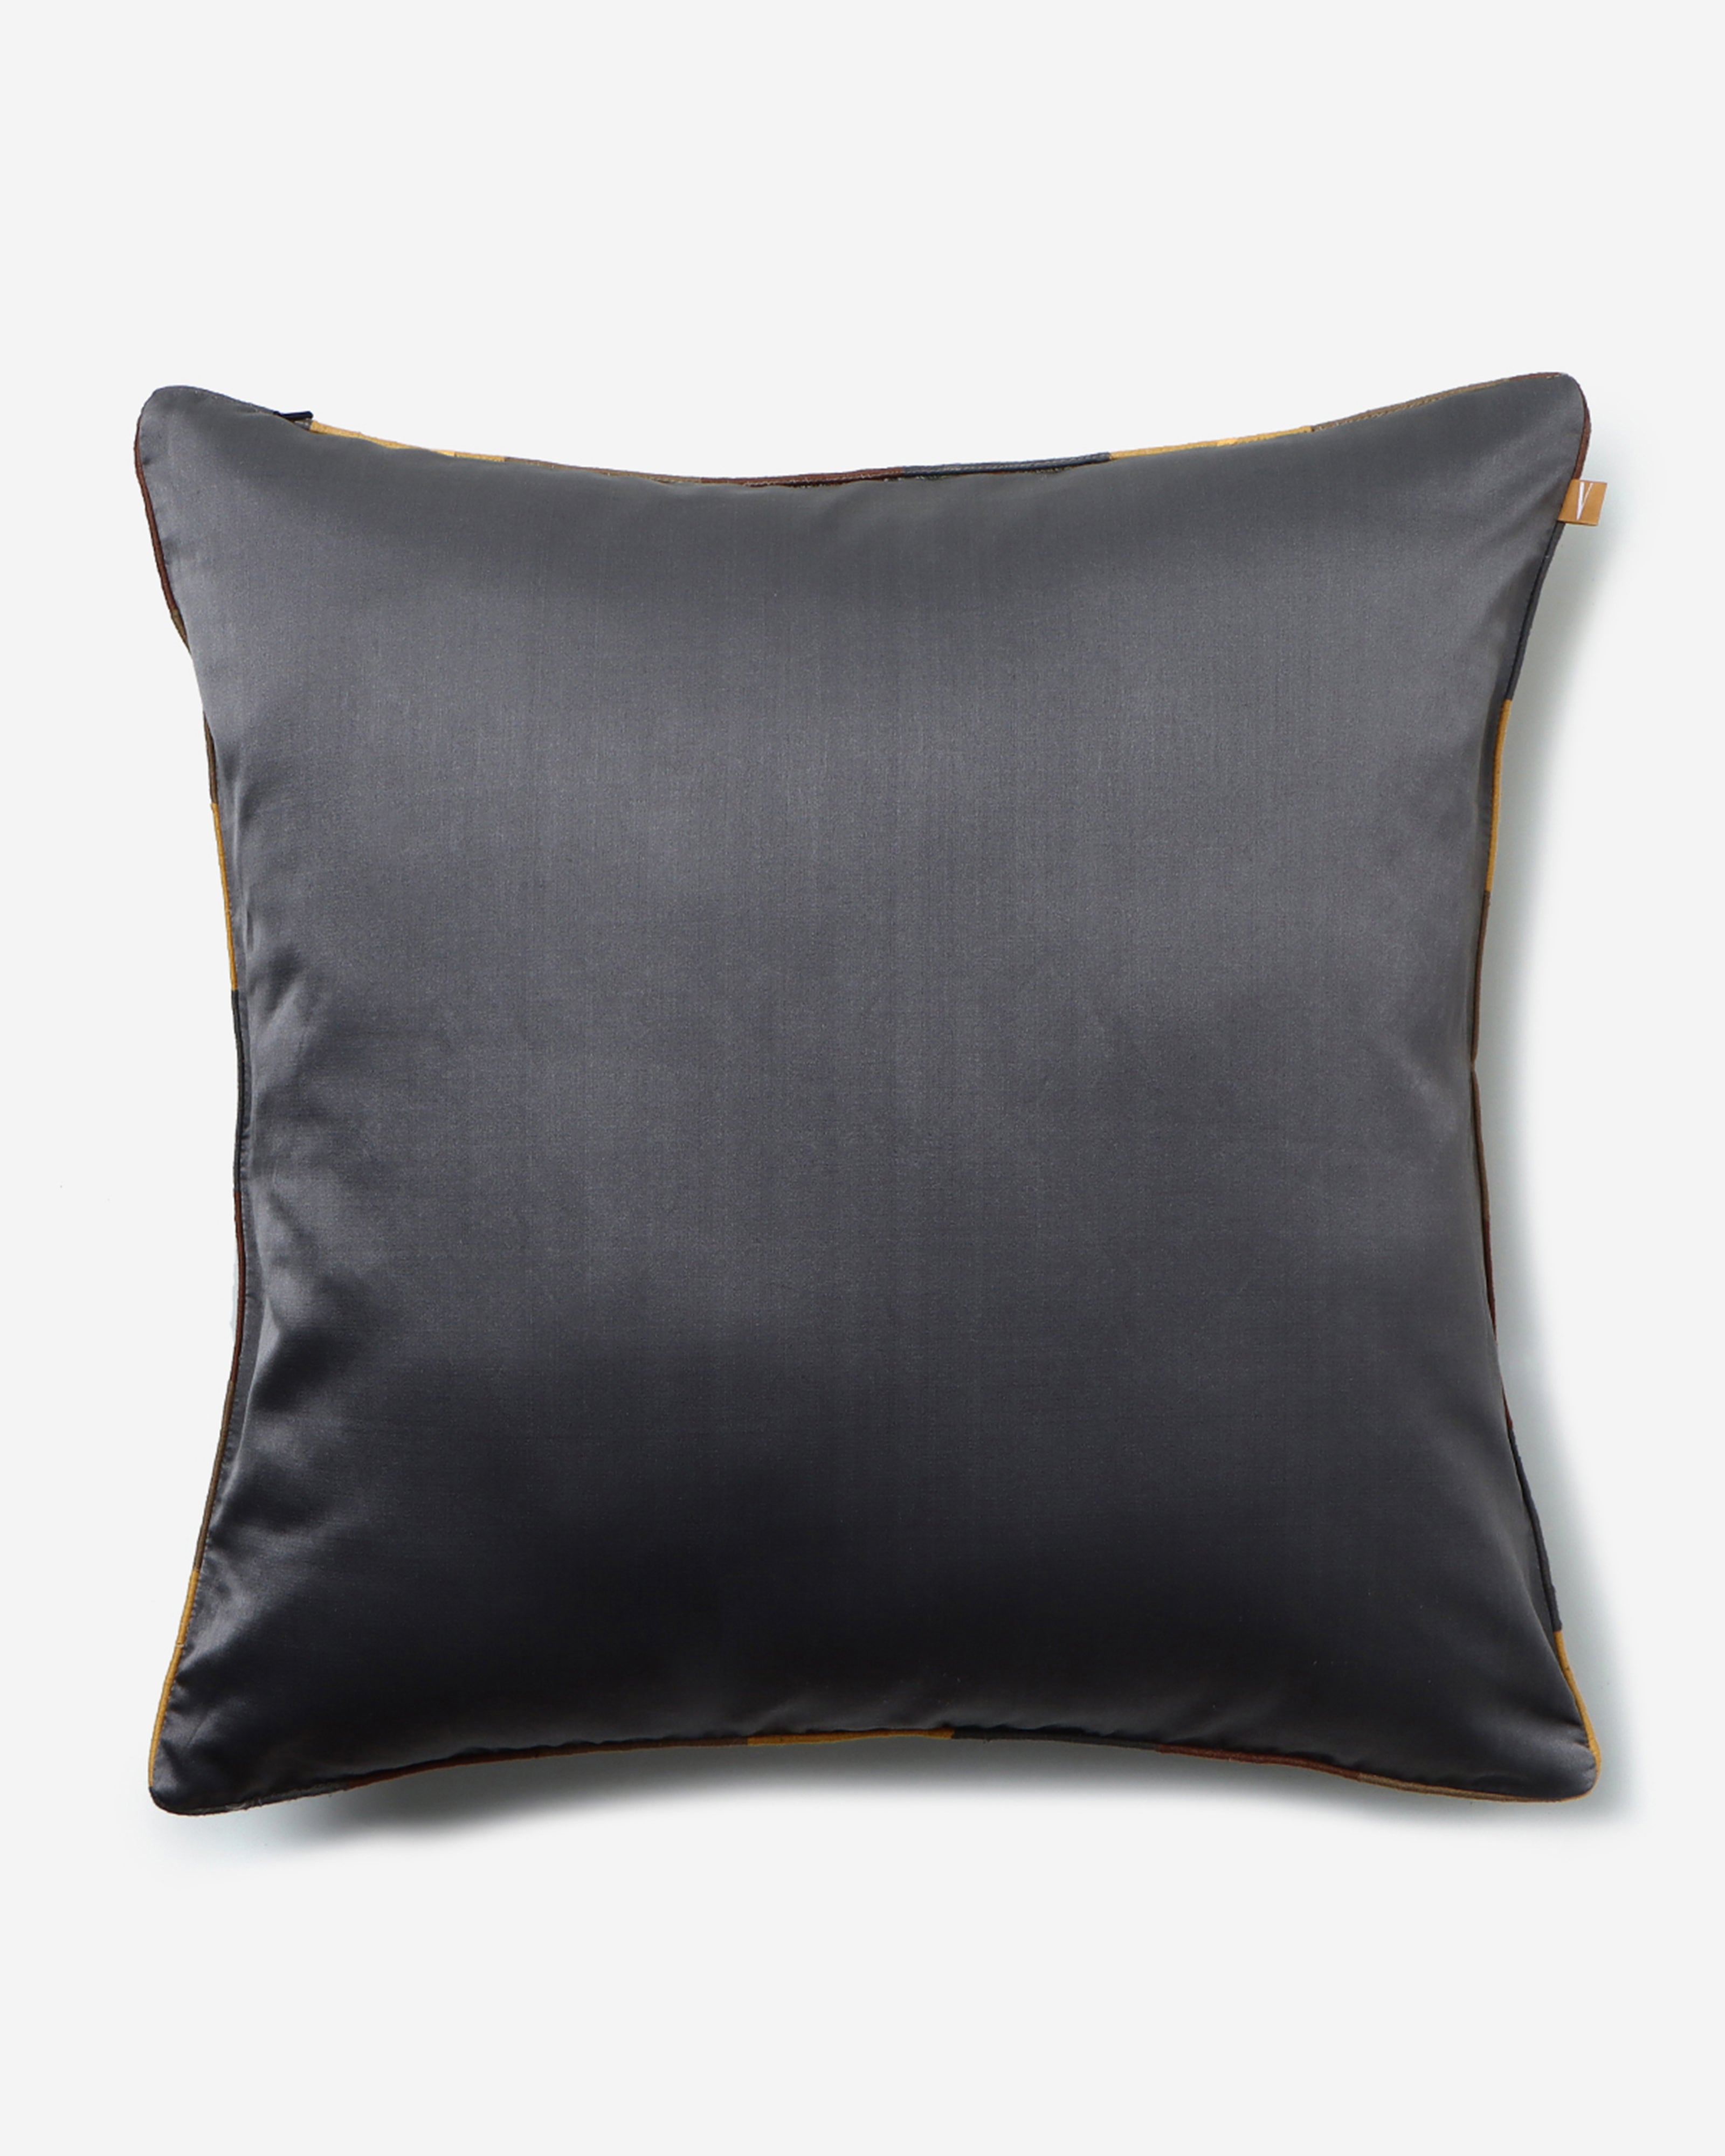 Reva Gyasar Silk Cushion Cover - Medium Grey